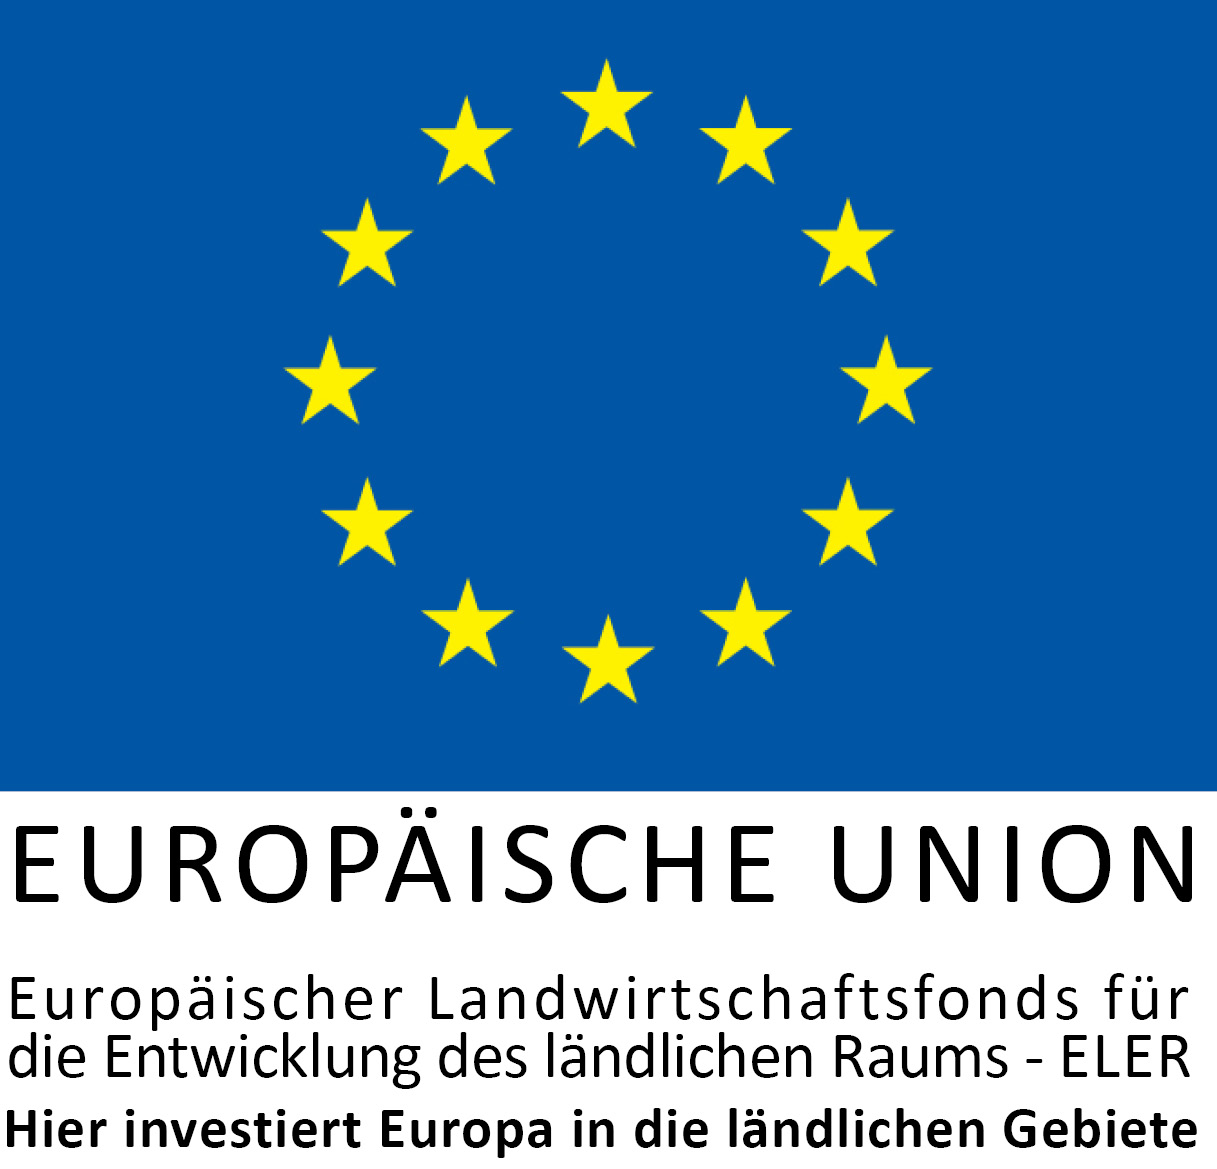 Europäische Union, Europäischer Landwirtschaftsfonds für die Entwicklung des ländlichen Raums - Eler, Hier investiert Europa in die ländlichen Gebiete